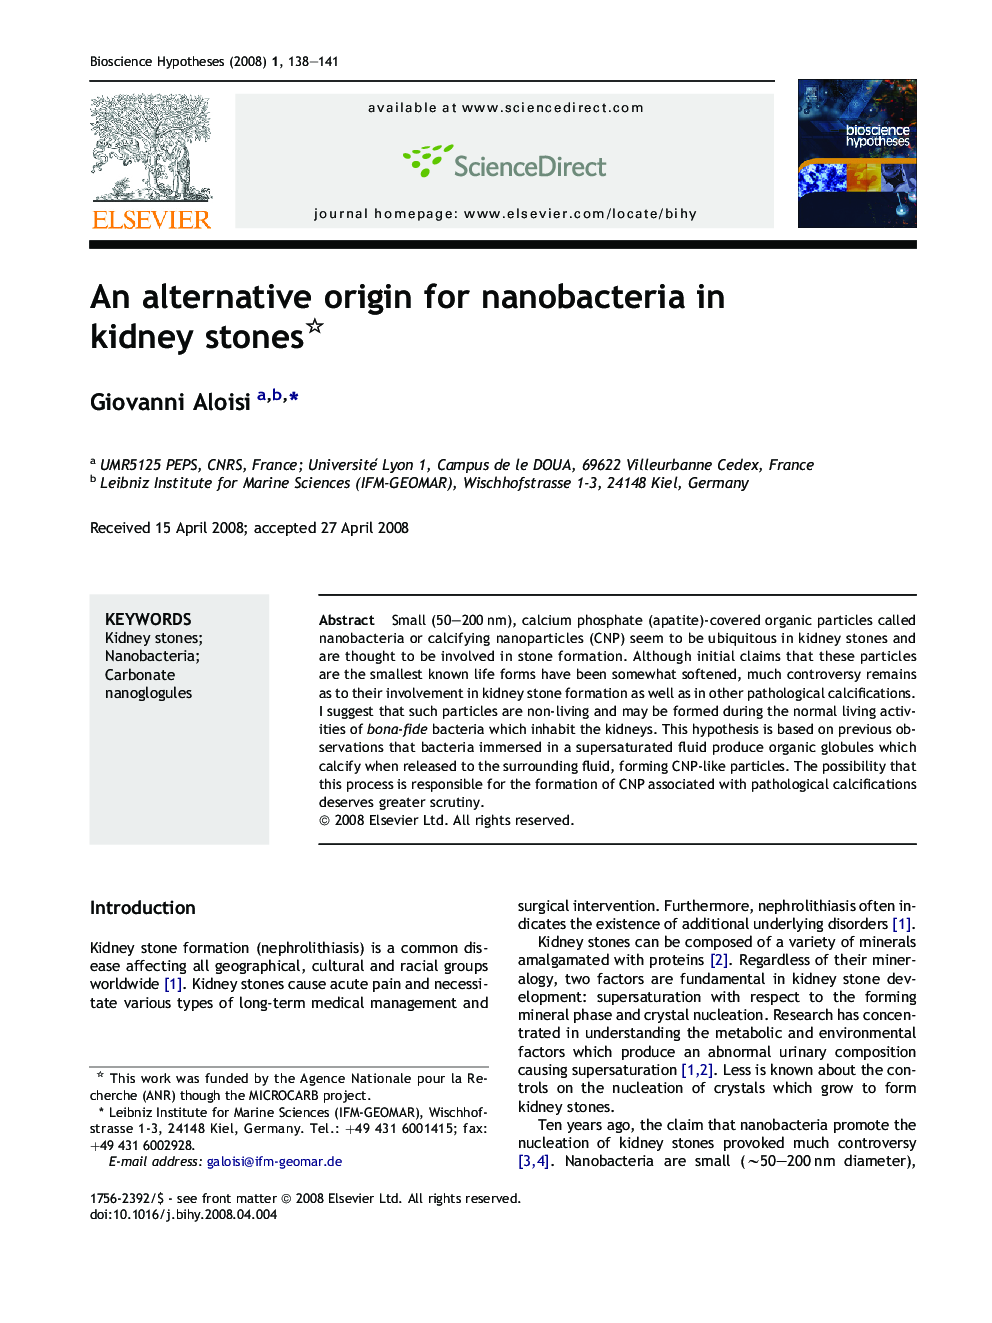 An alternative origin for nanobacteria in kidney stones 